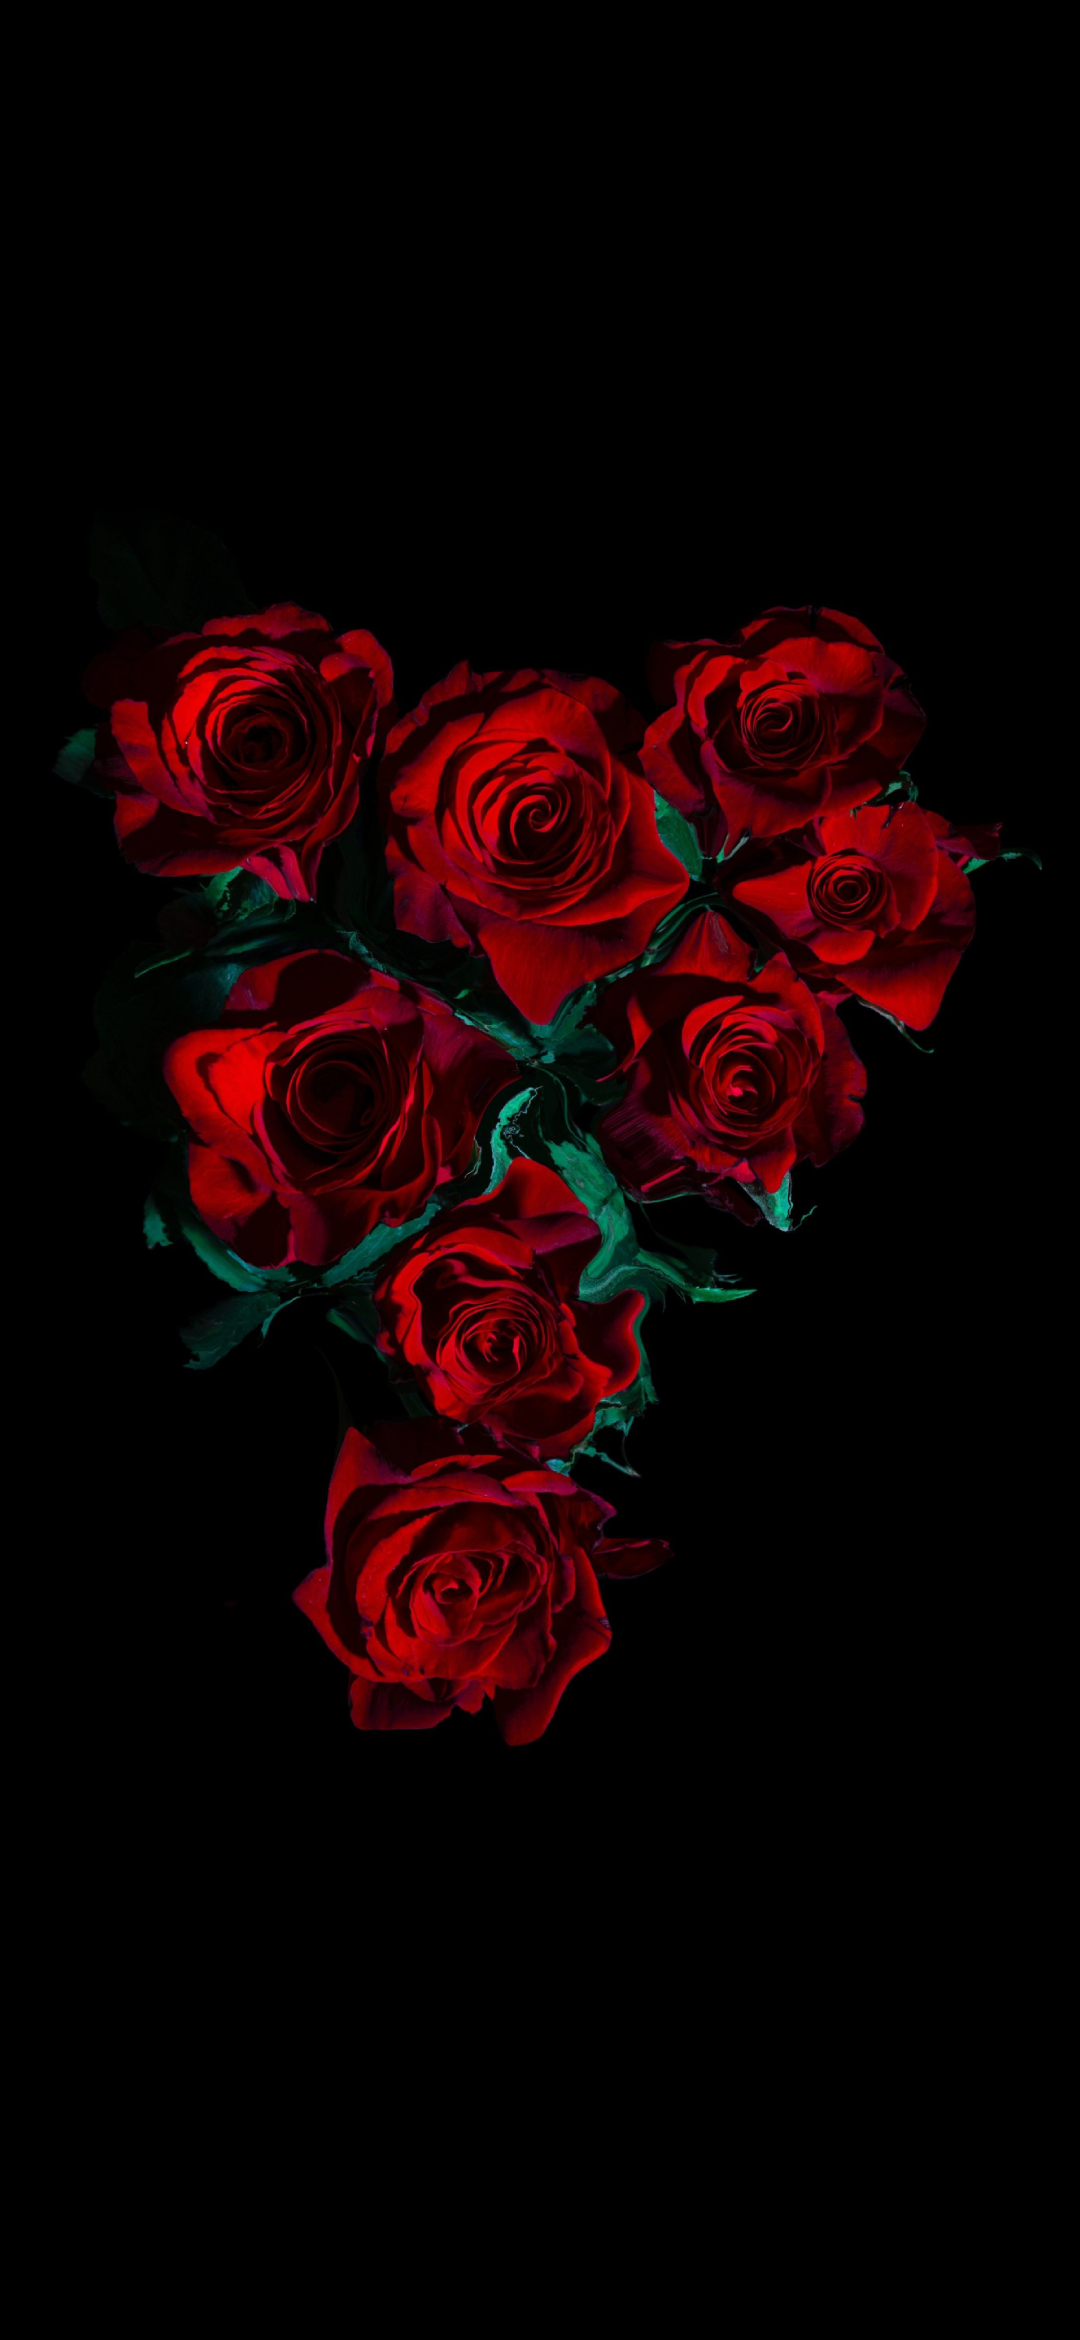 綺麗な薔薇の花 高画質 Aquos Zero5g Basic スマホ壁紙 待ち受け スマラン